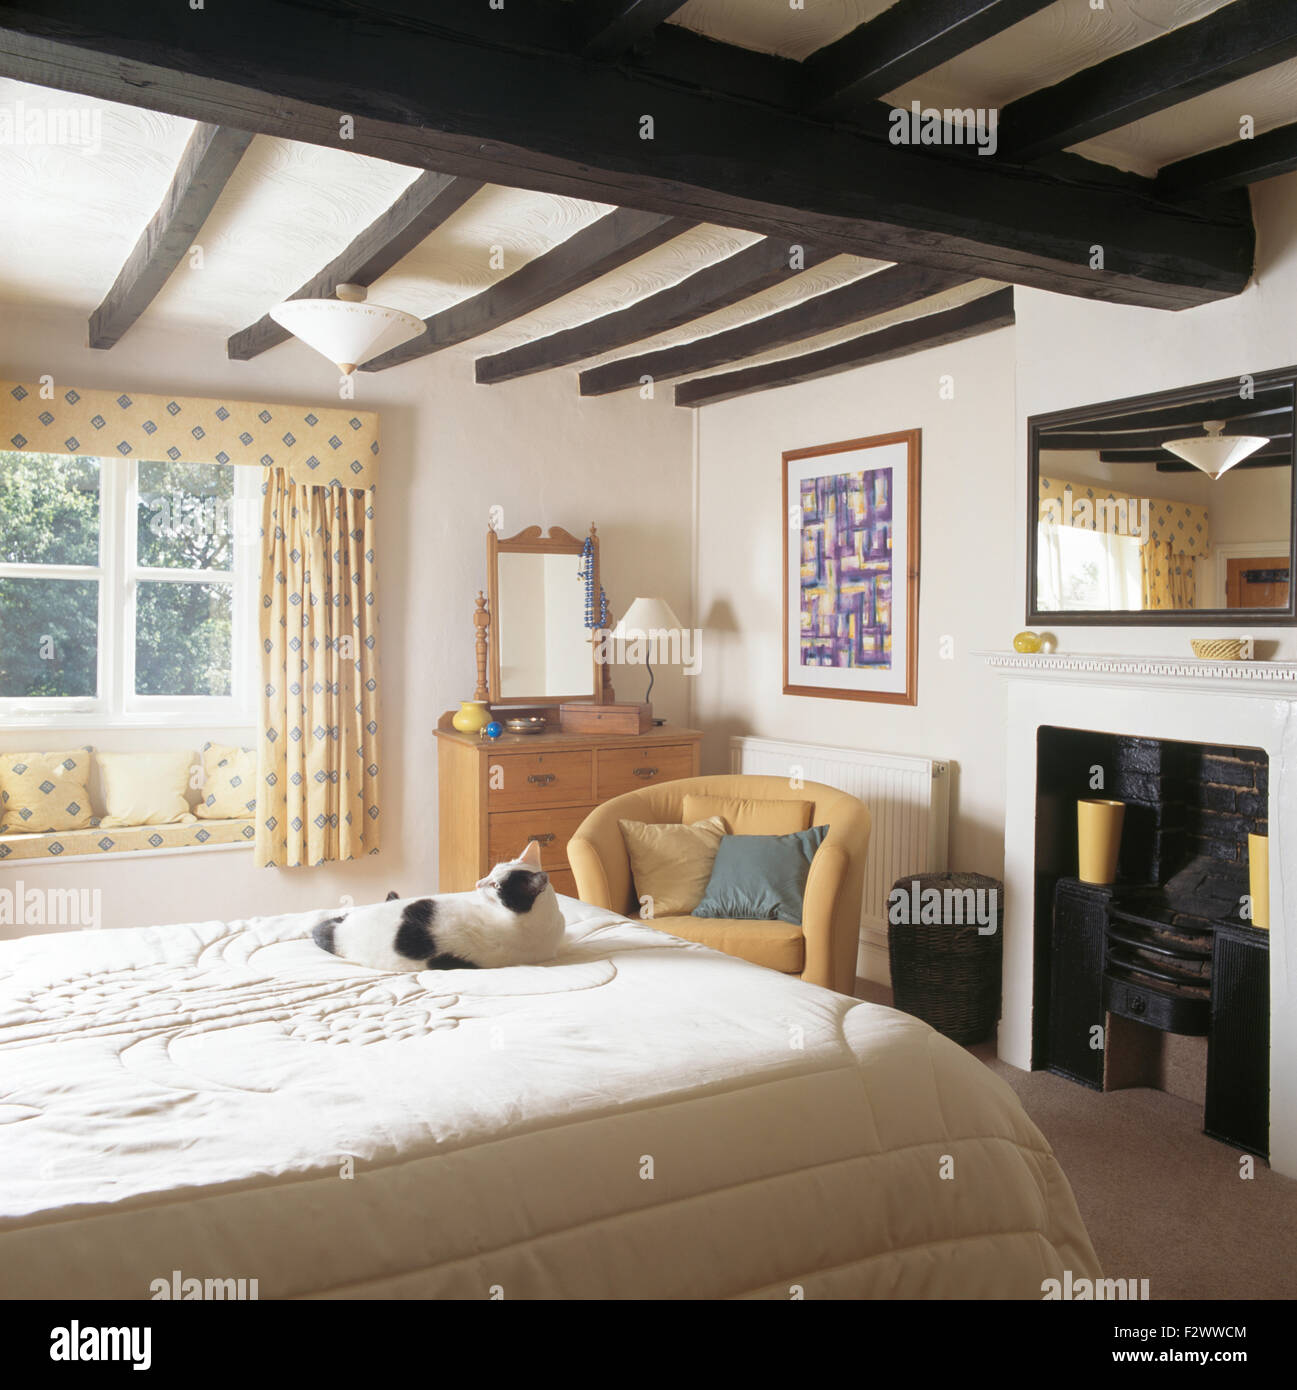 Schwarz + weiße Katze auf auf Bett im Schlafzimmer Ferienhaus mit schwarz bemalten rustikalen Balken und ein Spiegel über dem Kamin Stockfoto